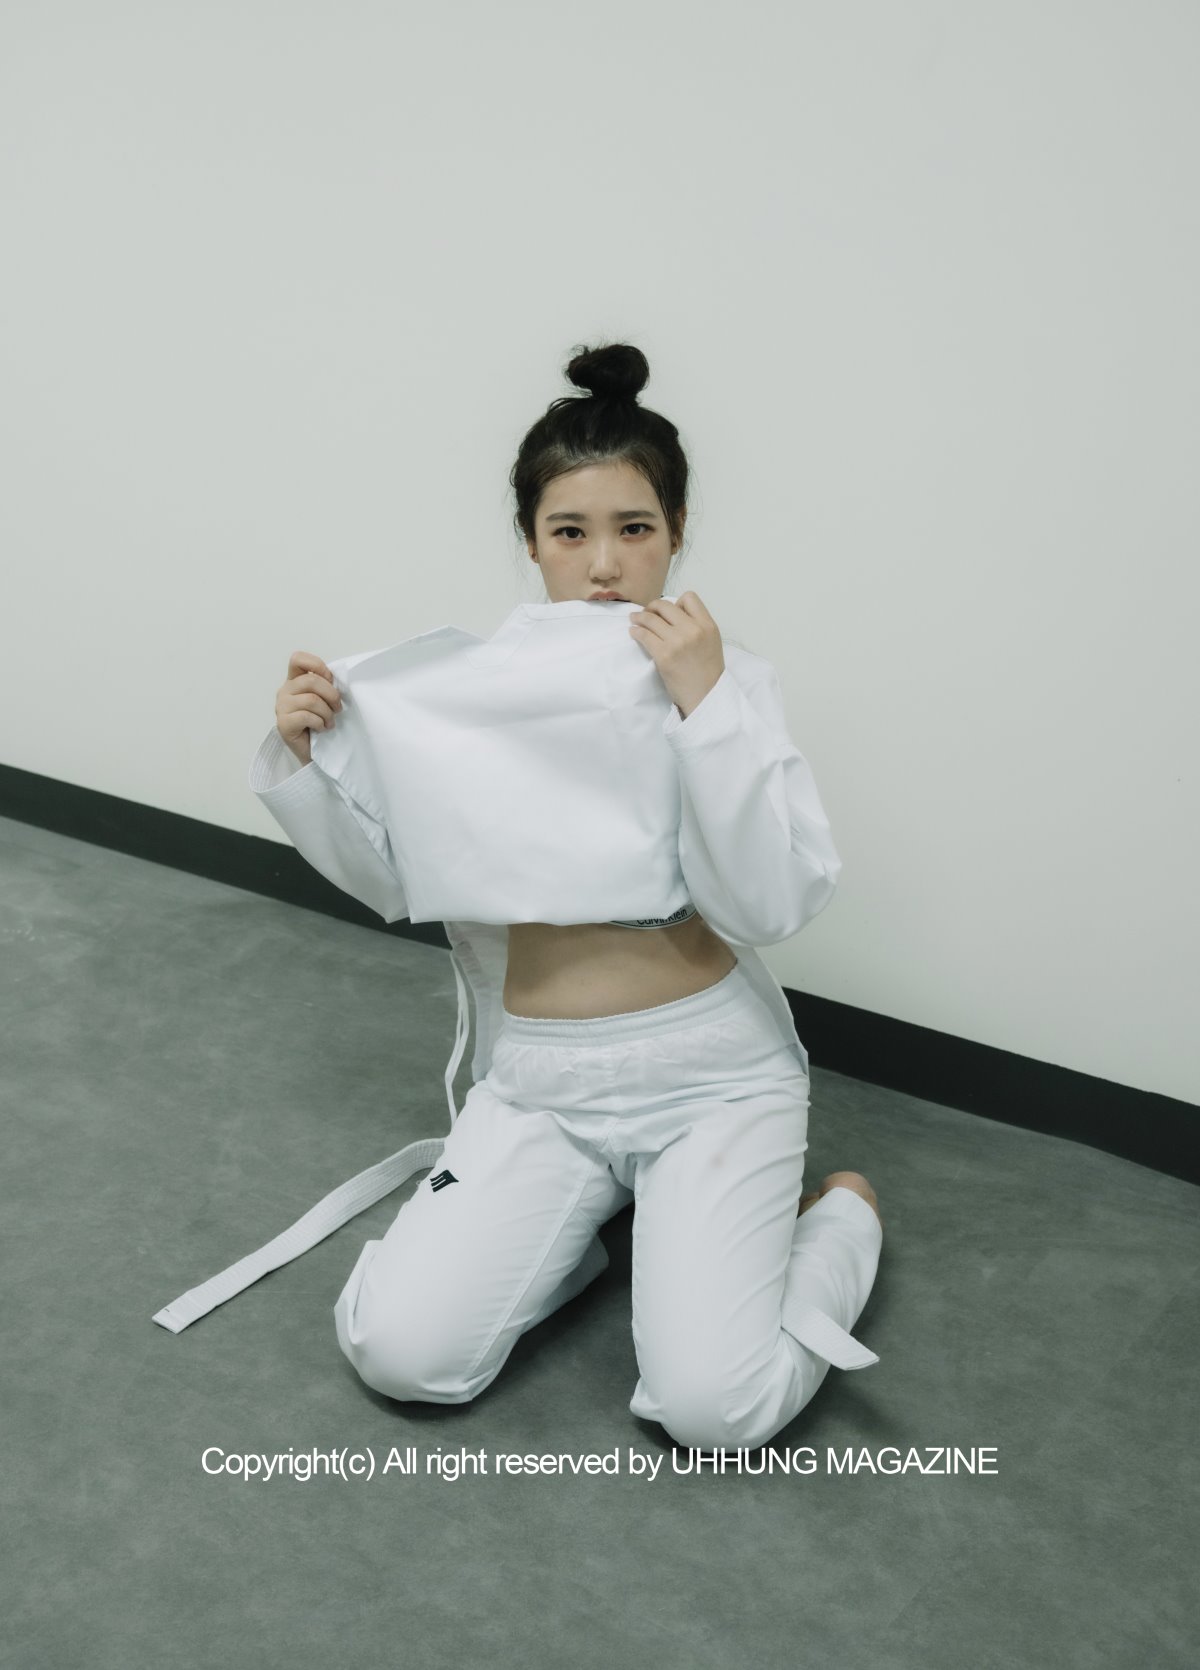 UHHUNG MAGAZINE Jenn Vol 1 Taekwondo Part1 0047 4999819109.jpg